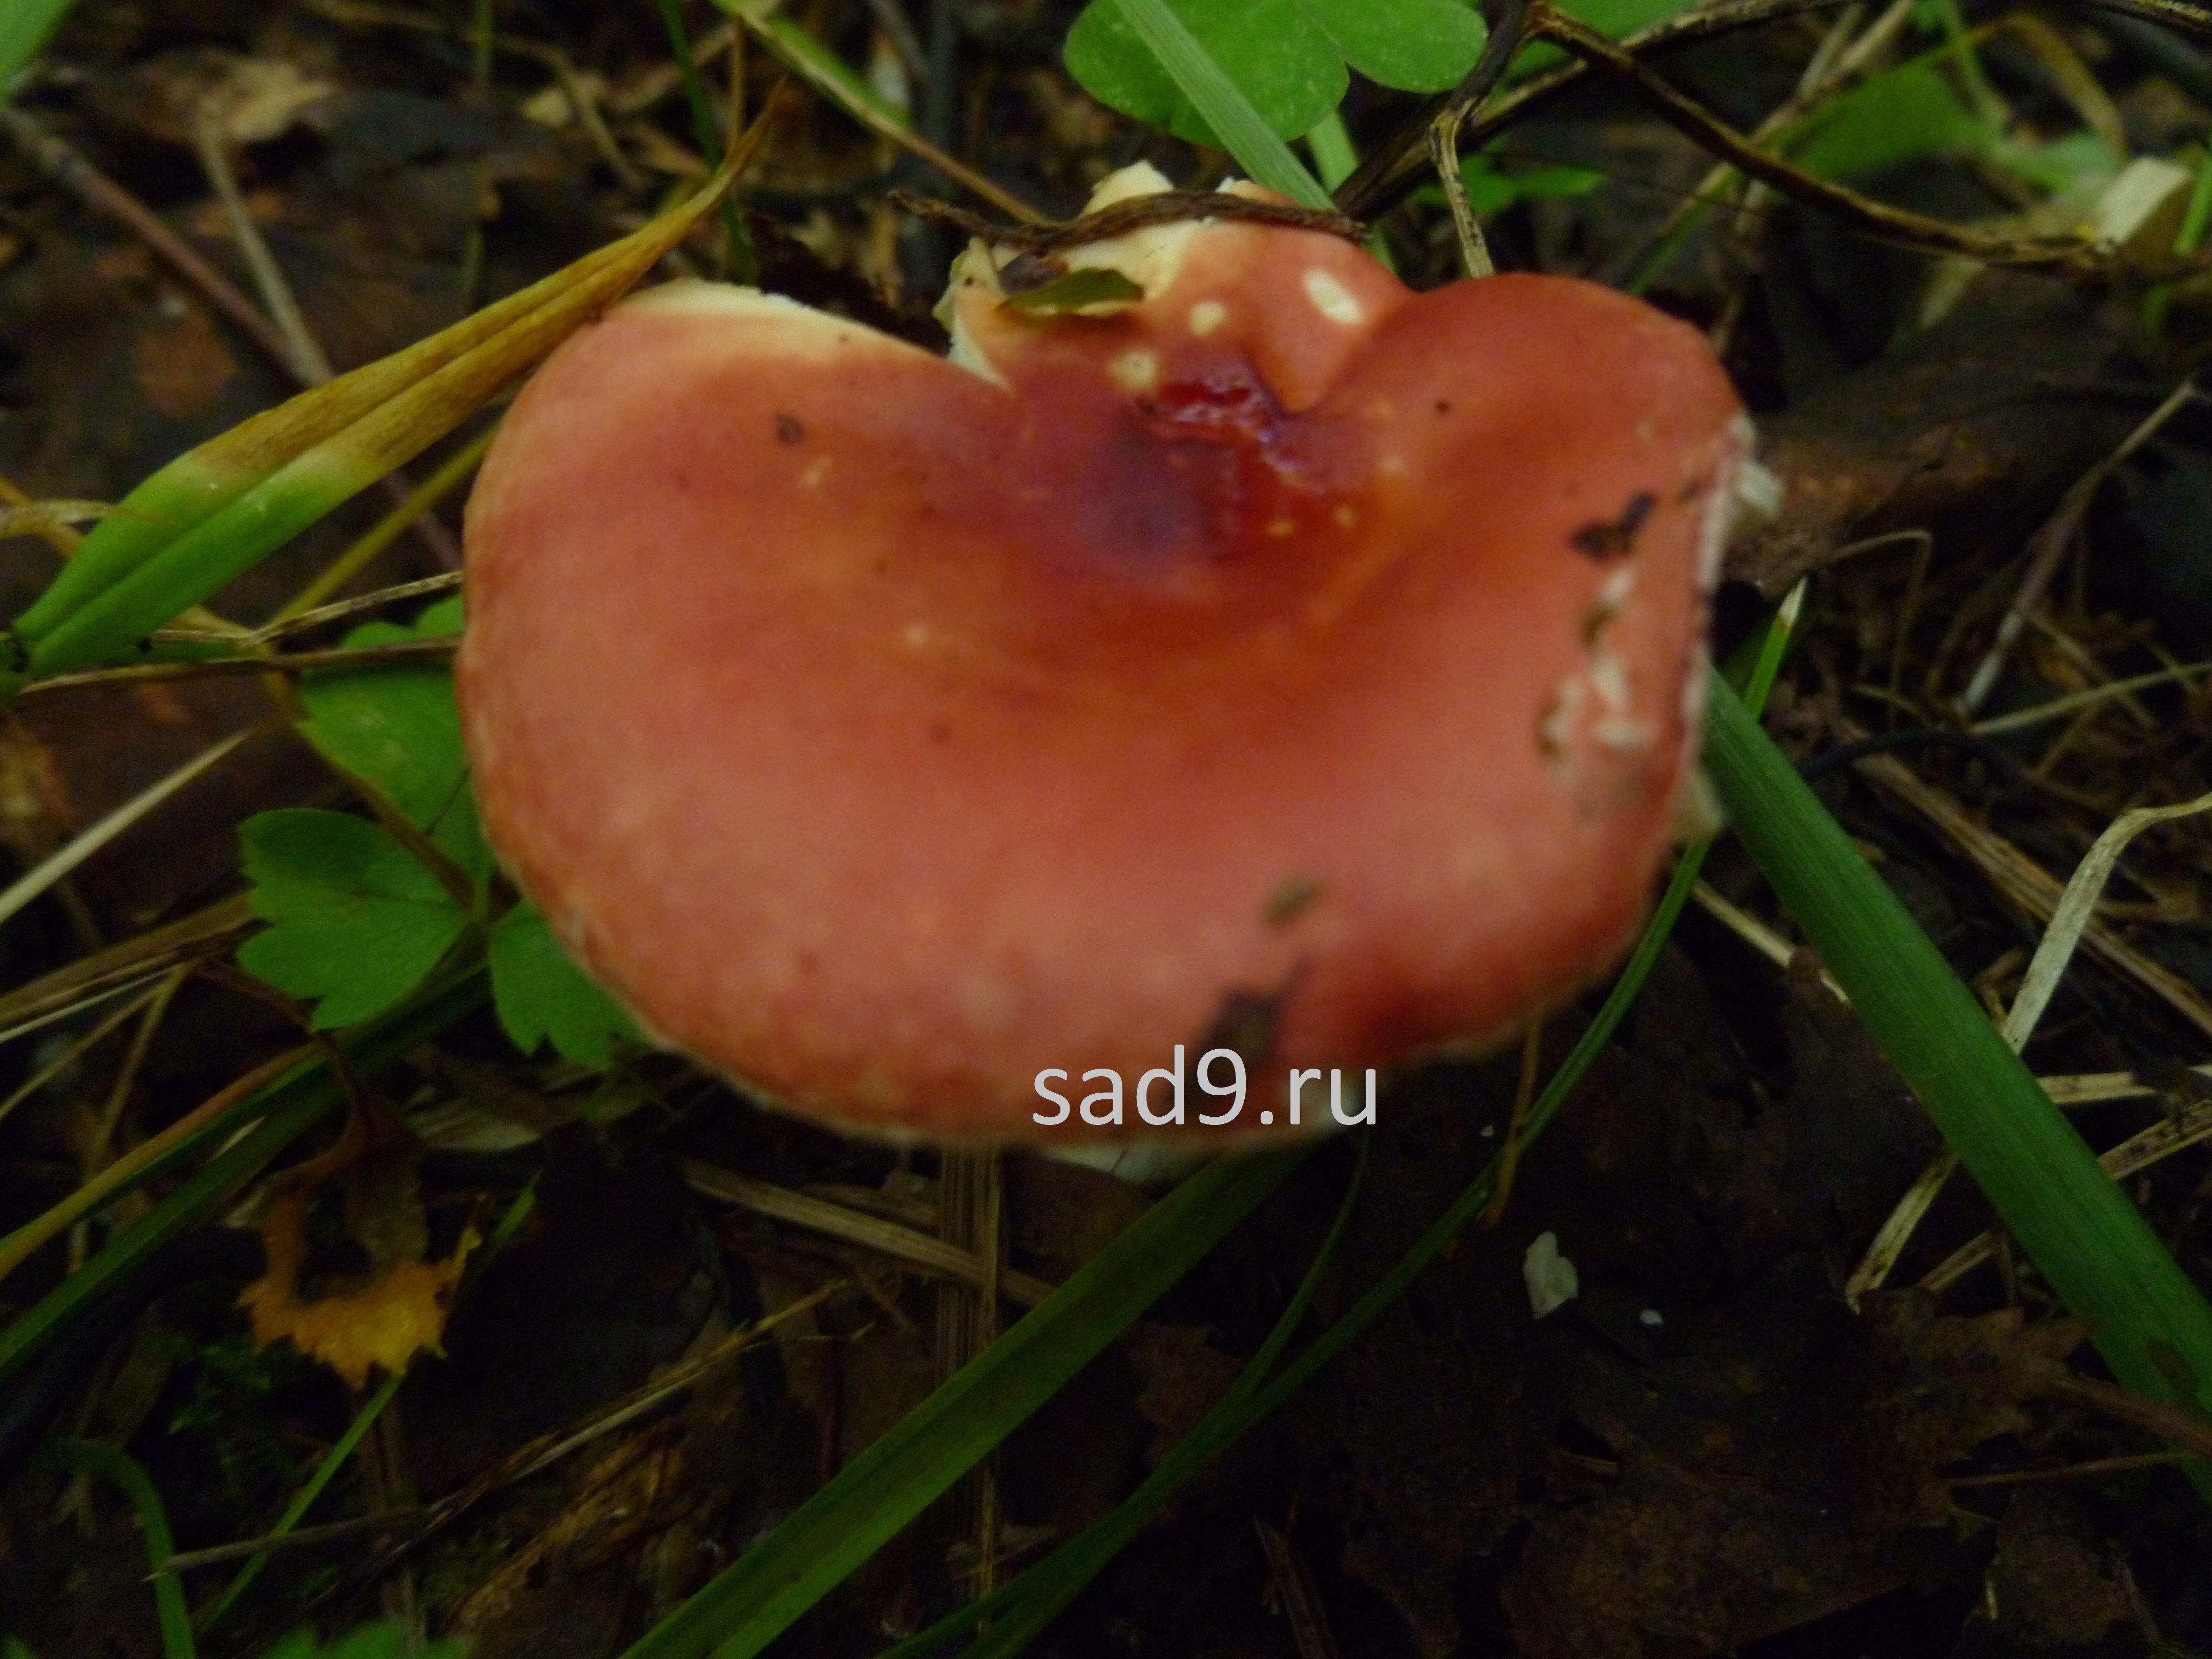 Съедобные грибы фото и название - сыроежка или синявка